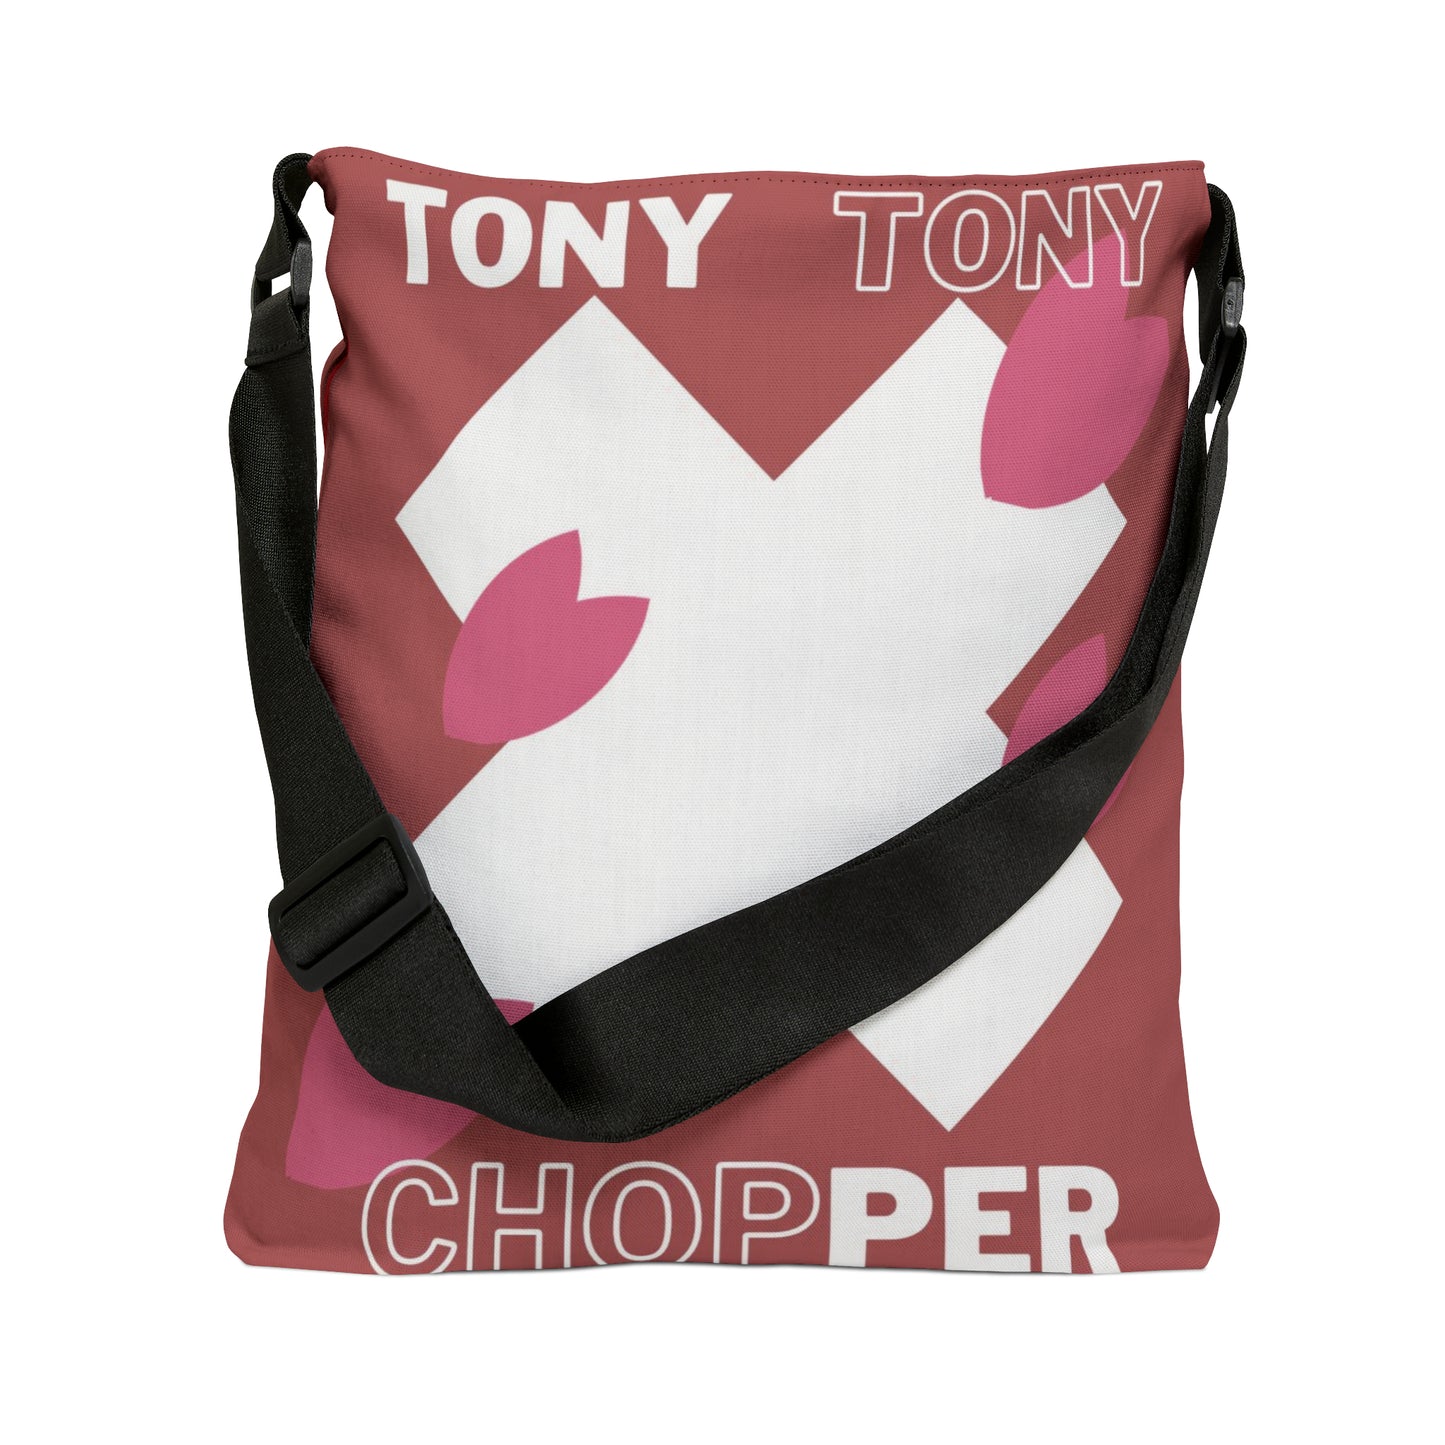 Tony Tony Adjustable Tote Bag (AOP)